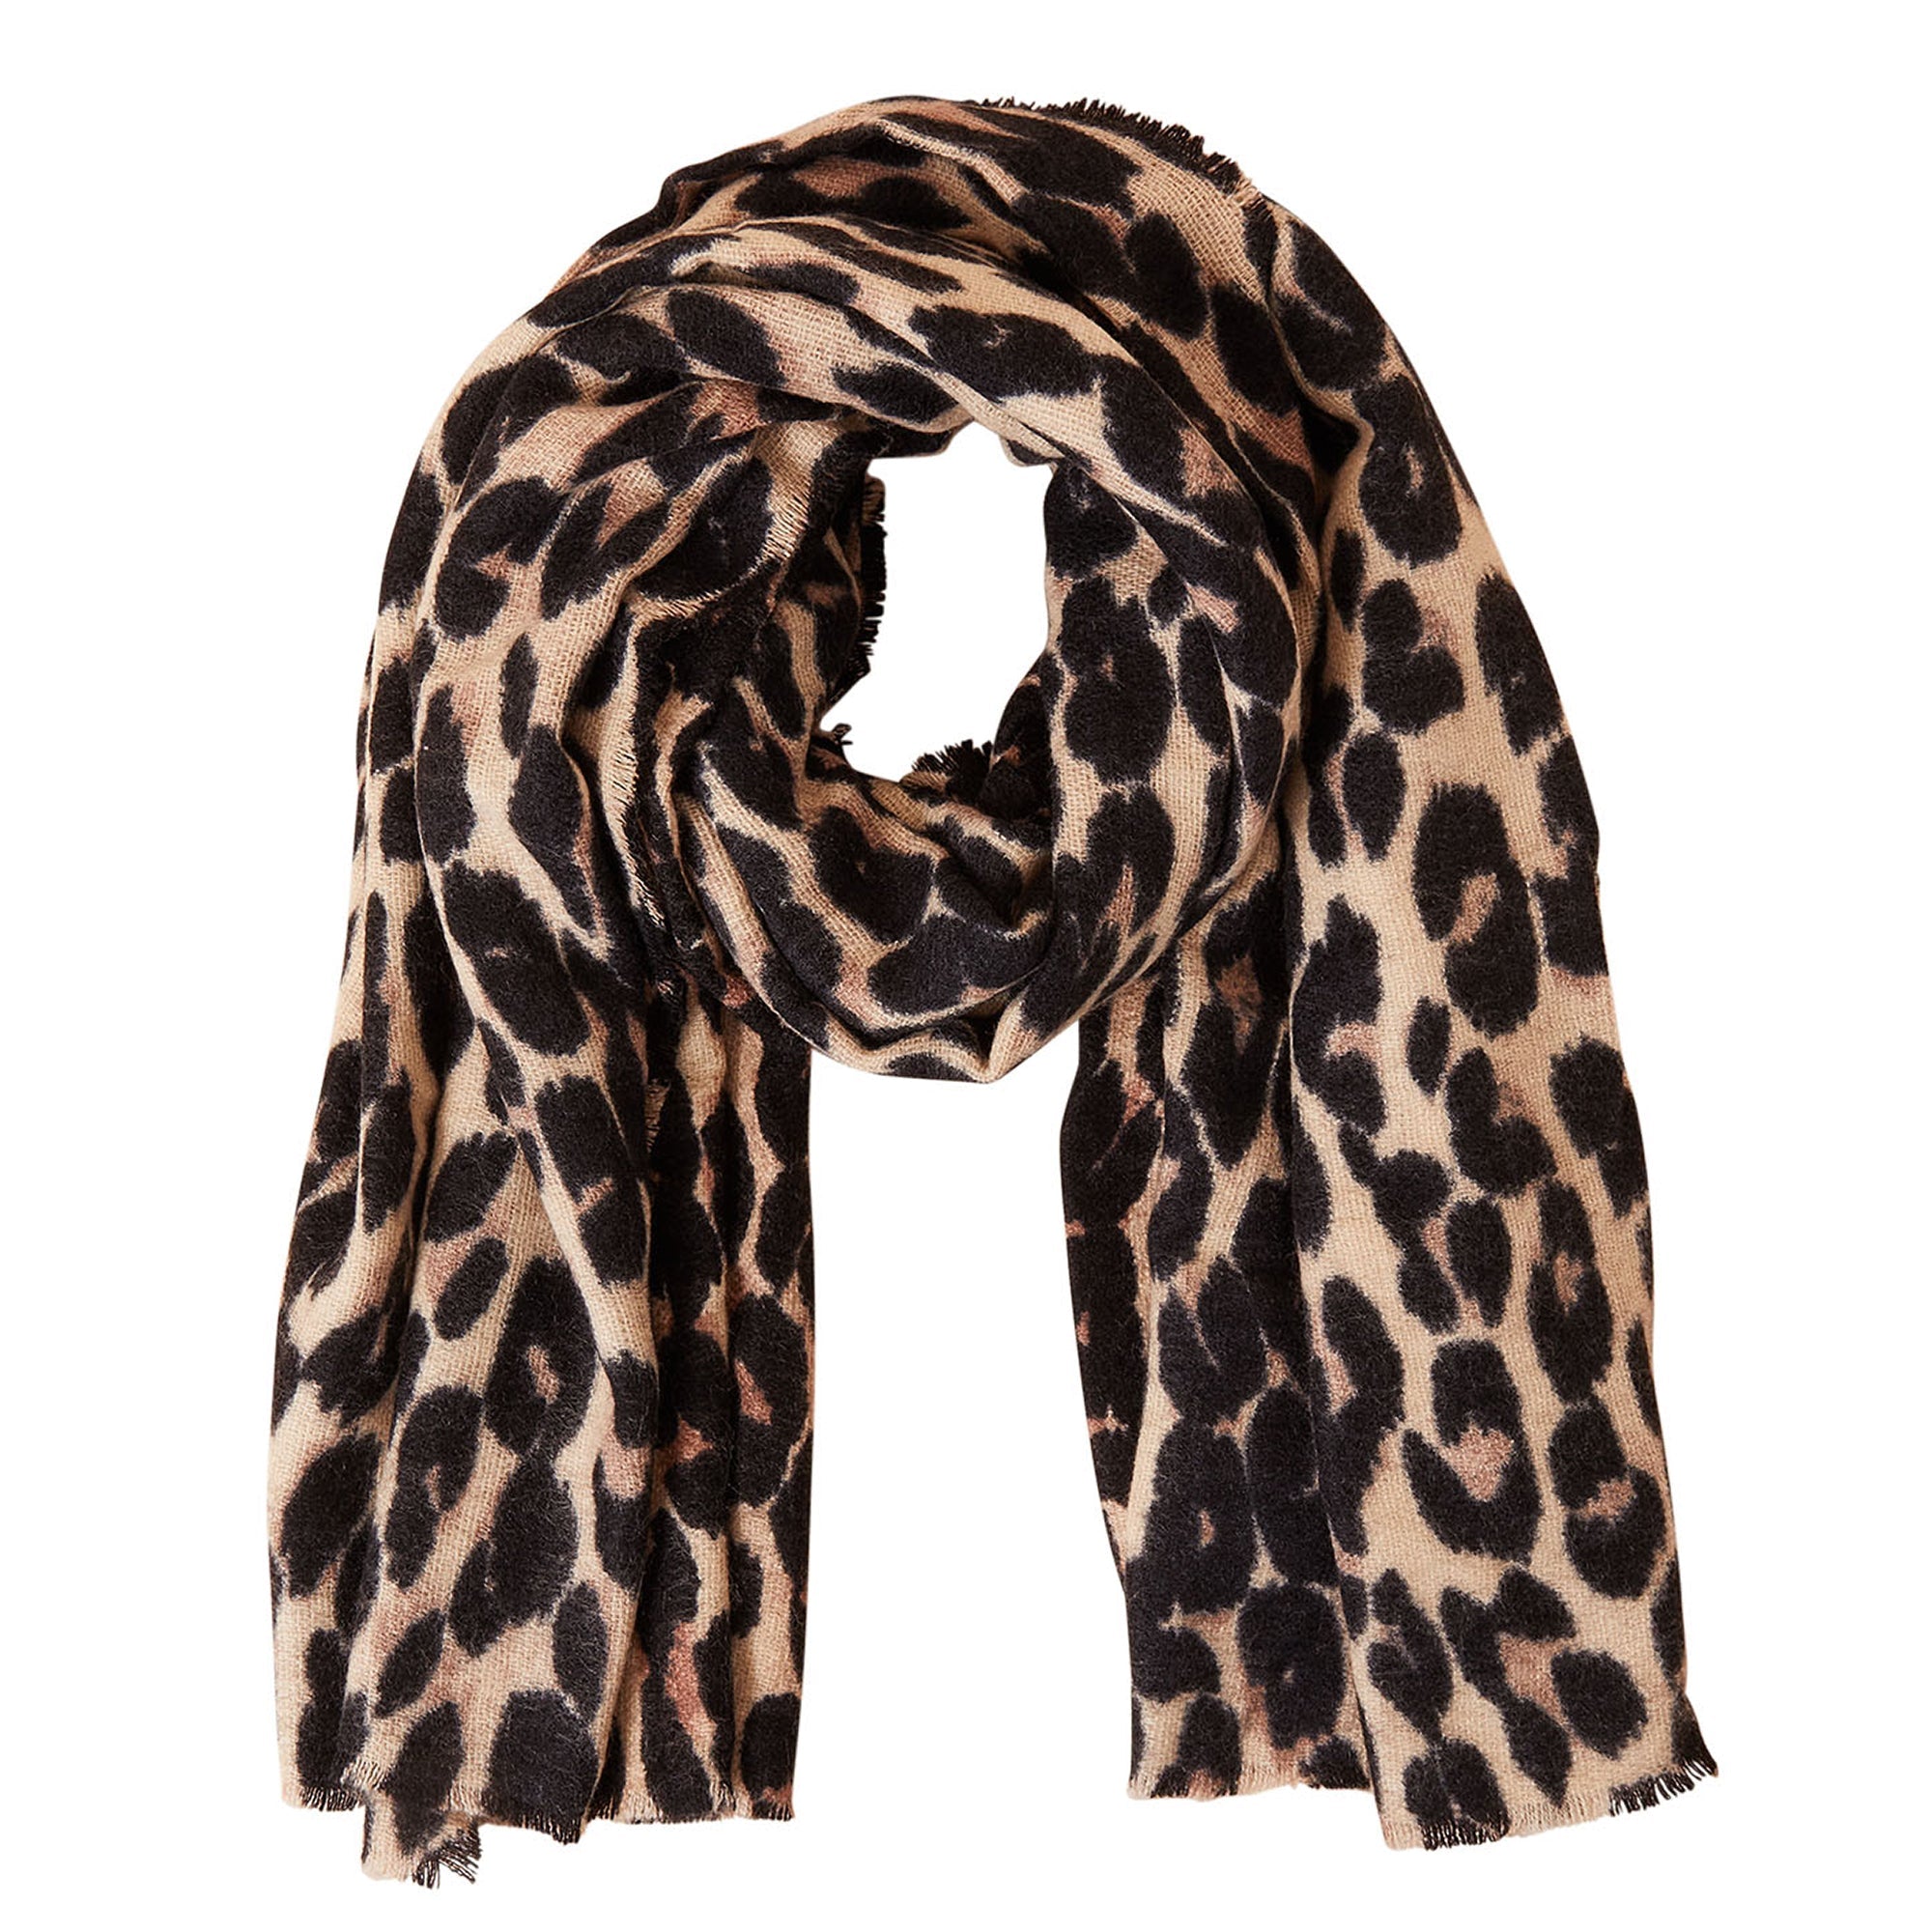 Accessorize London Women's Leopard Blanket Scarf